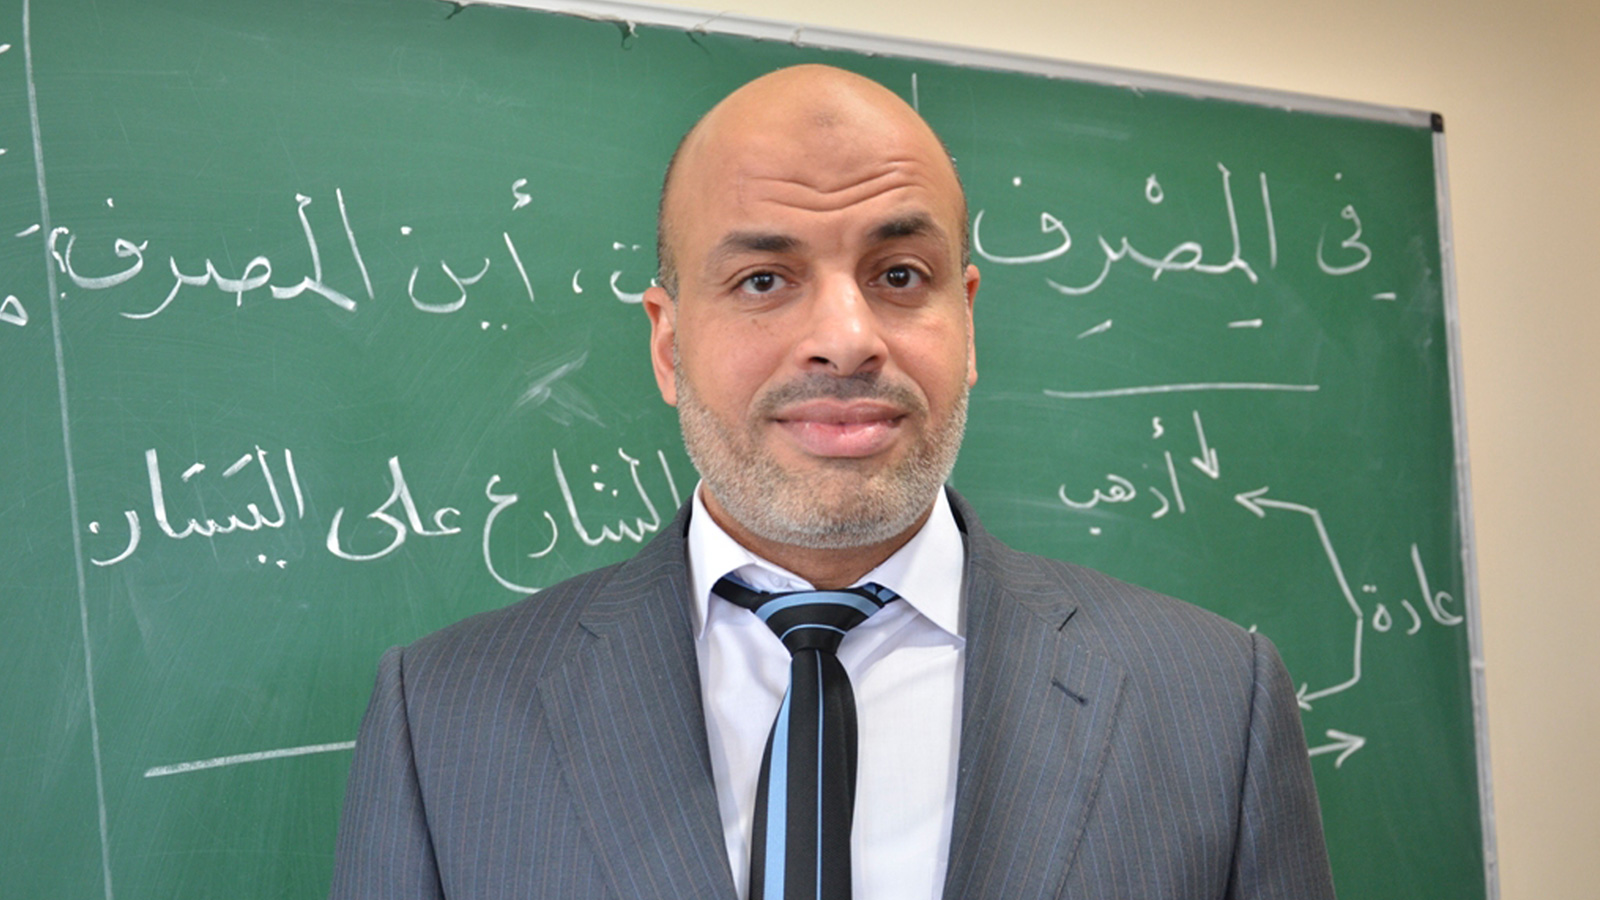 ‪علاء الغرباوي مدير مركز سلام لتعليم اللغات‬ (الجزيرة)